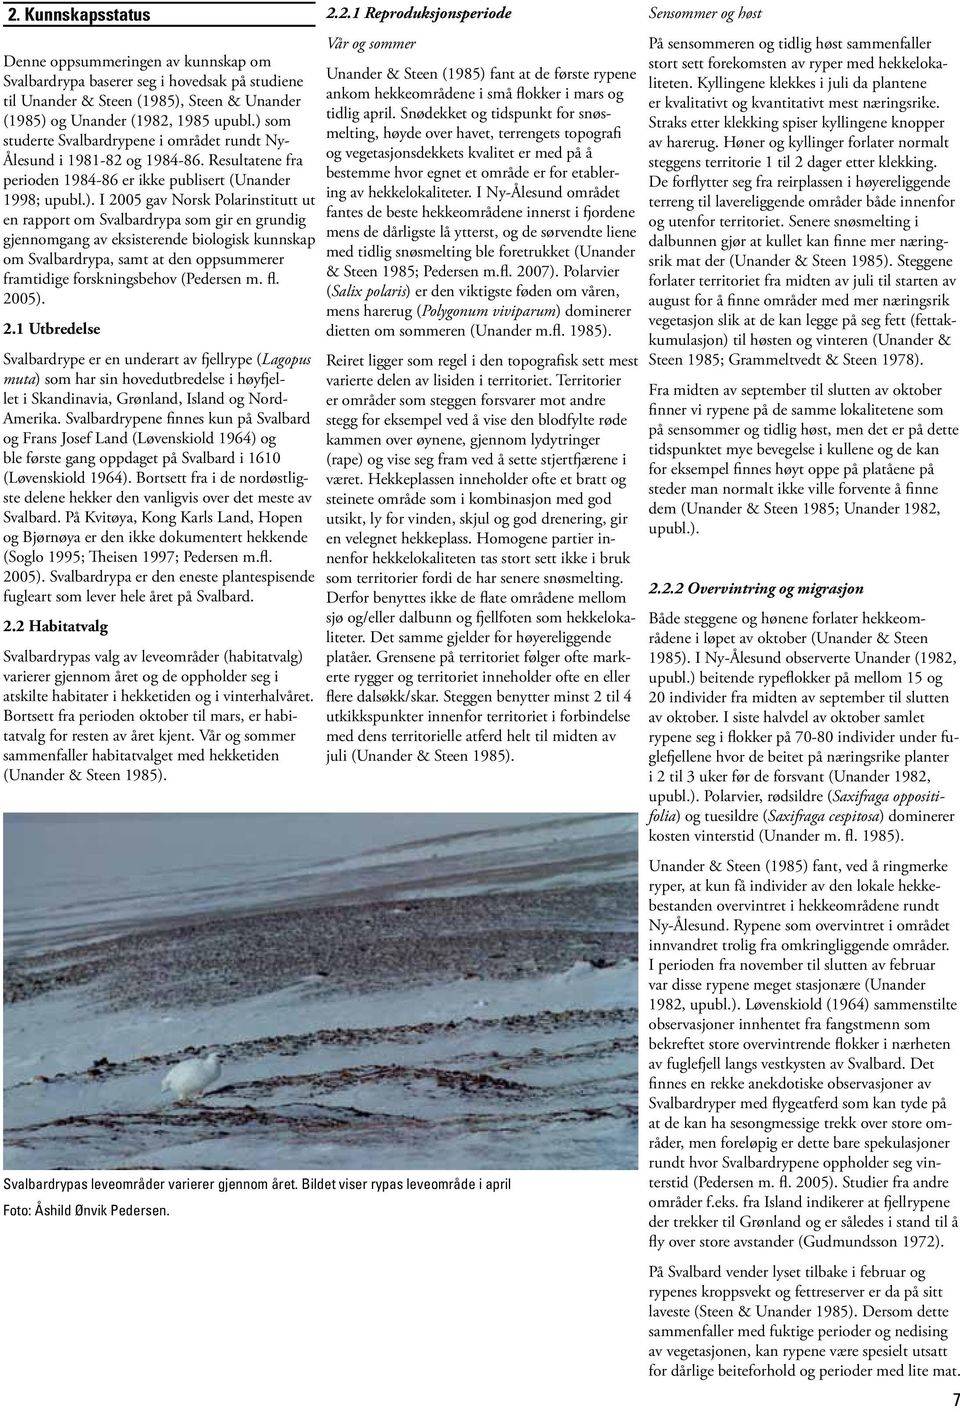 rapport om Svalbardrypa som gir en grundig gjennomgang av eksisterende biologisk kunnskap om Svalbardrypa, samt at den oppsummerer framtidige forskningsbehov (Pedersen m. fl. 20